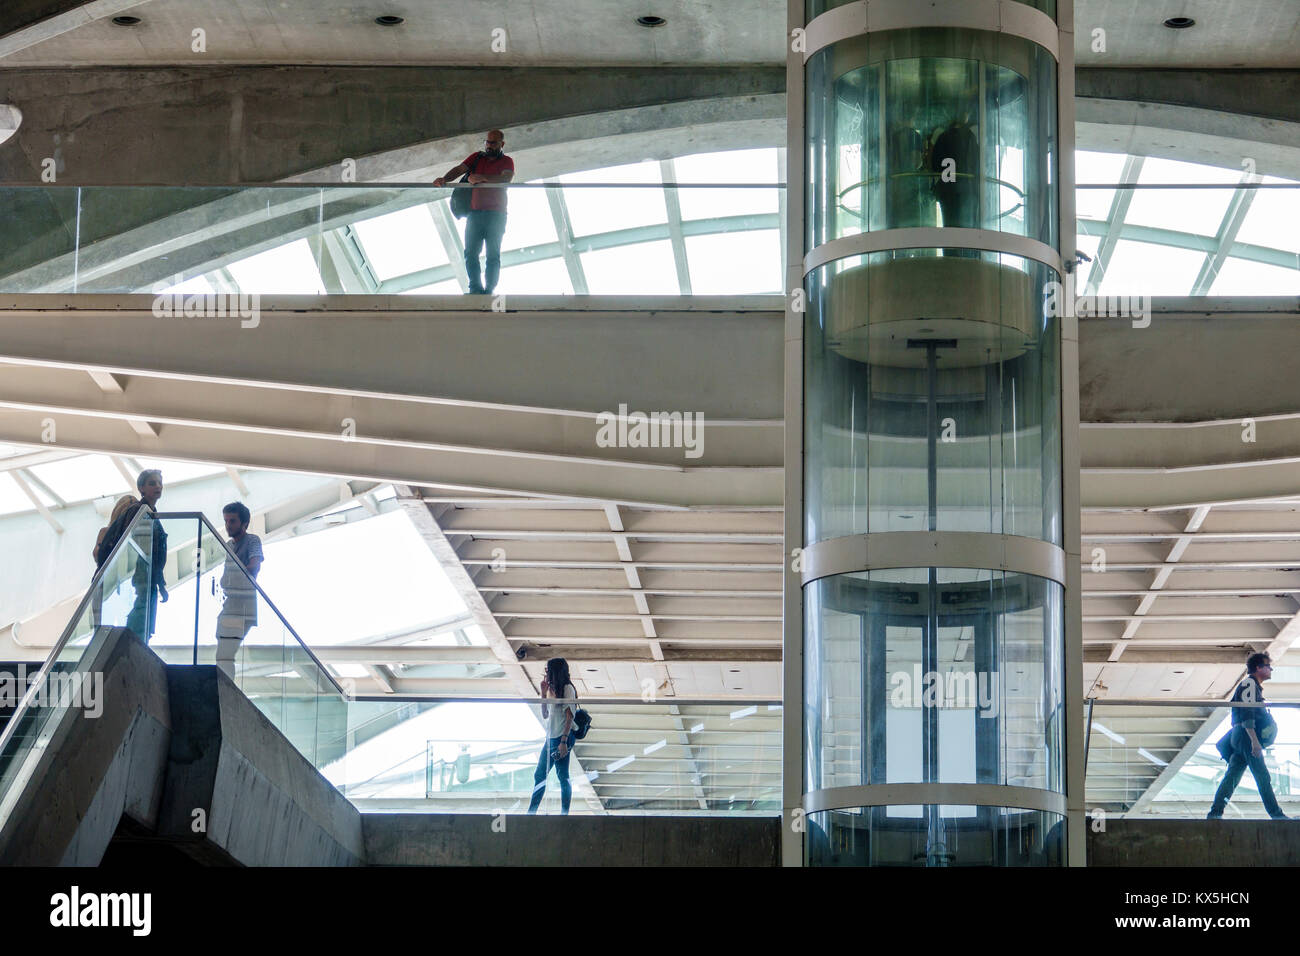 Lissabon Portugal, Oriente, Gare do Oriente, intermodaler Knotenpunkt, Transport, Bahnhof, Santiago Calatrava, moderne Architektur, Fußgängerbrücke, Glasaufzug, Stockfoto